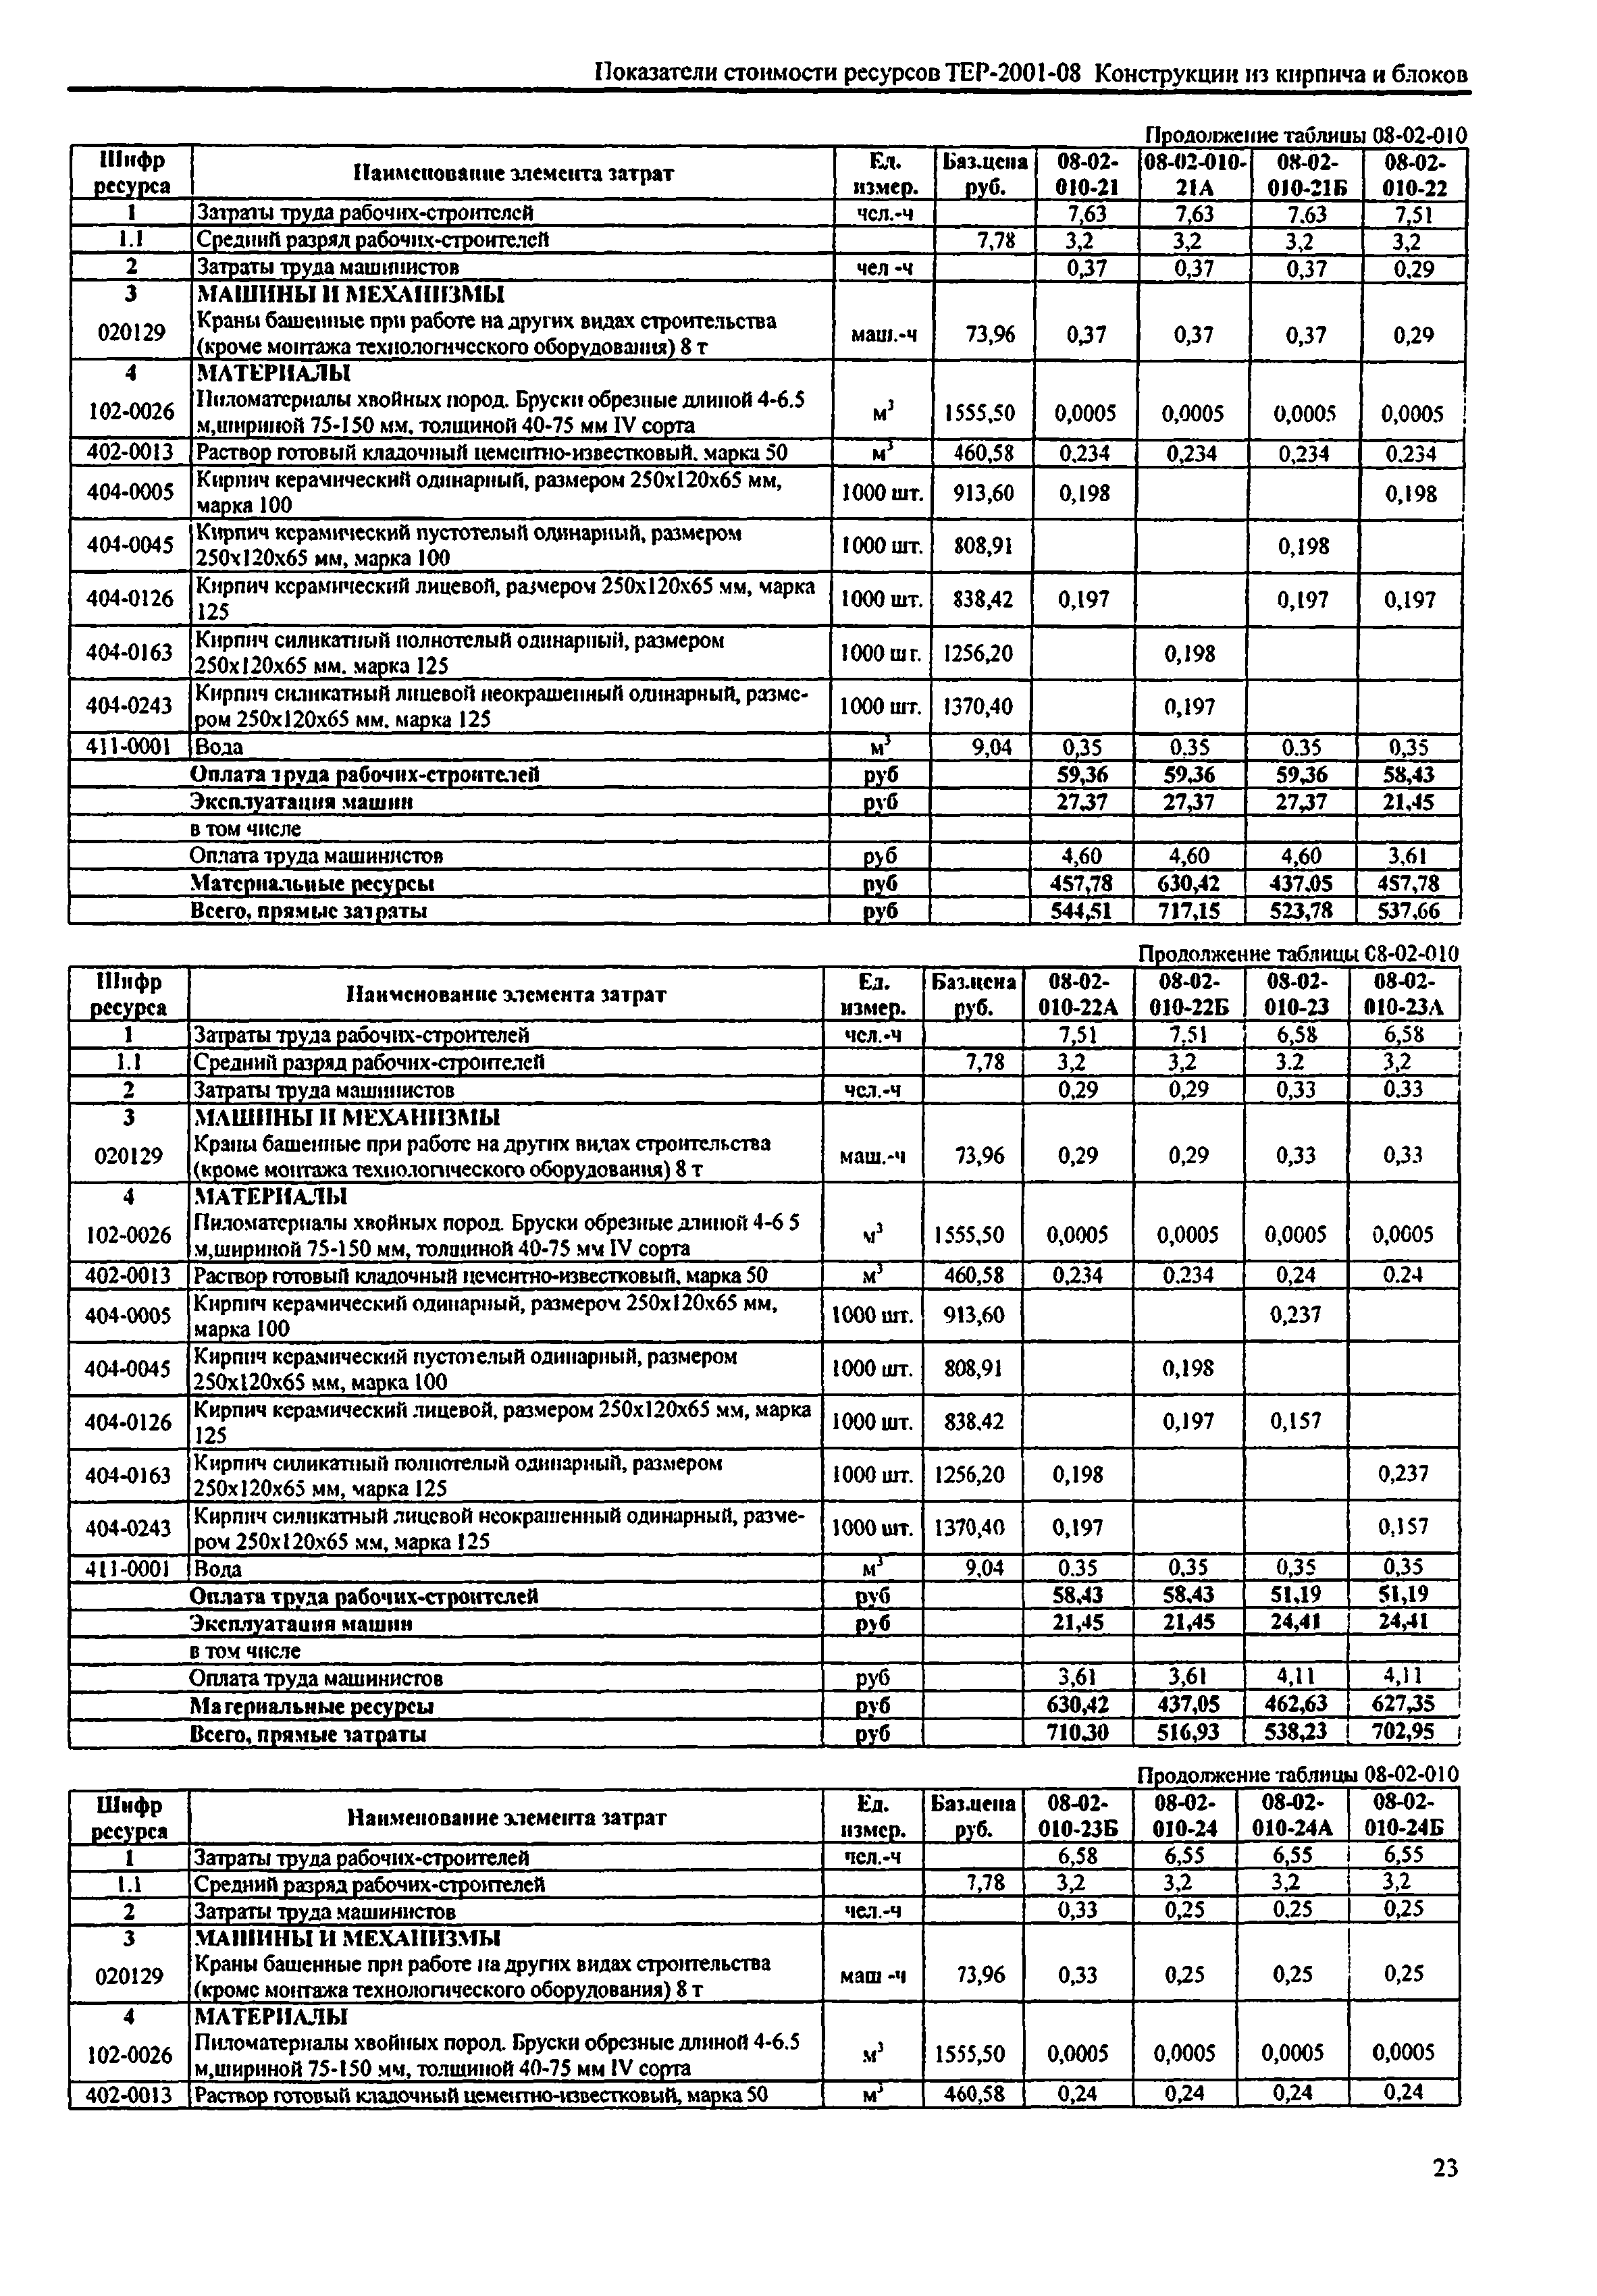 Справочное пособие к ТЕР 81-02-08-2001